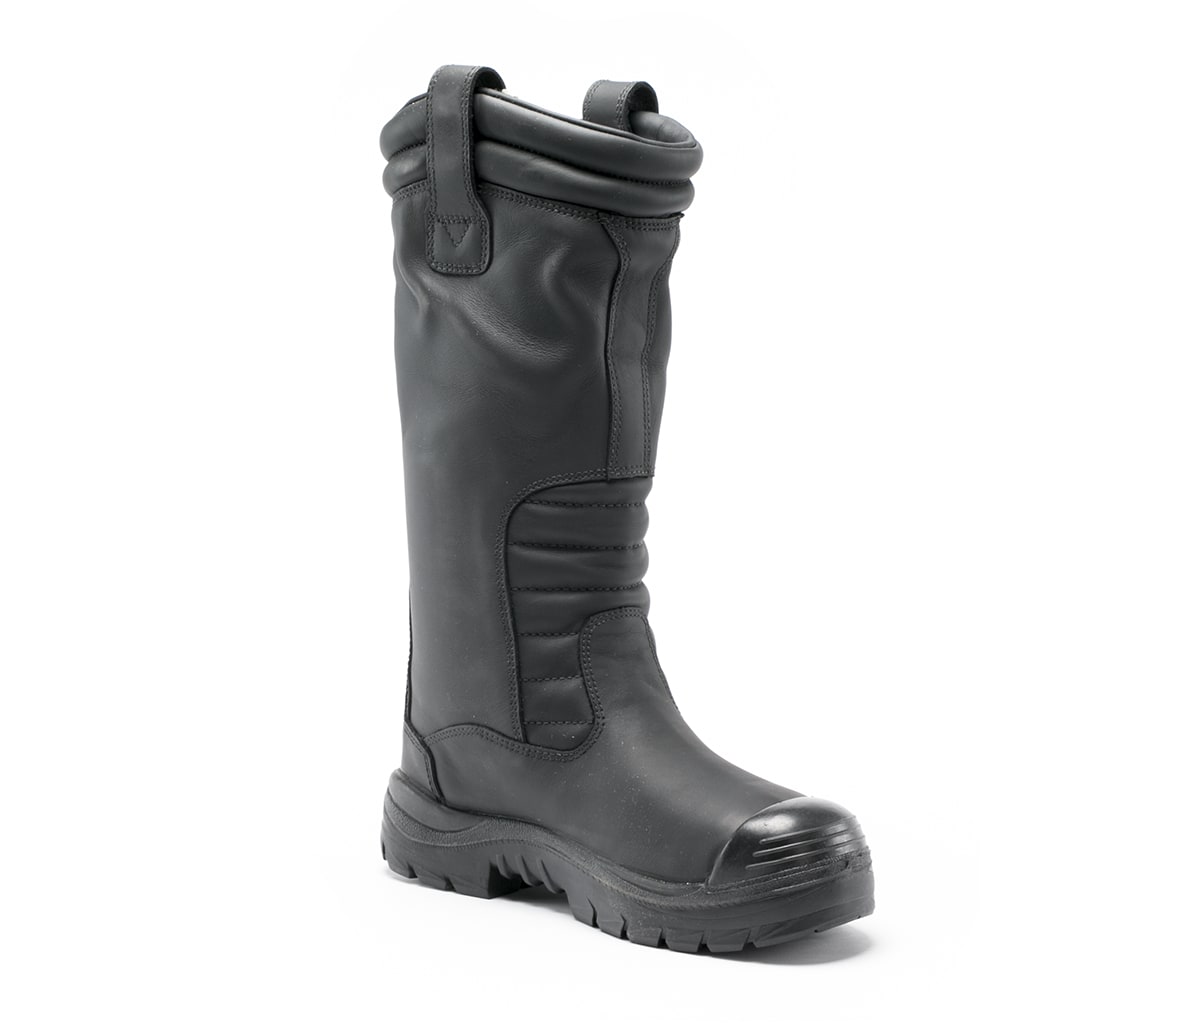 calf high waterproof boots